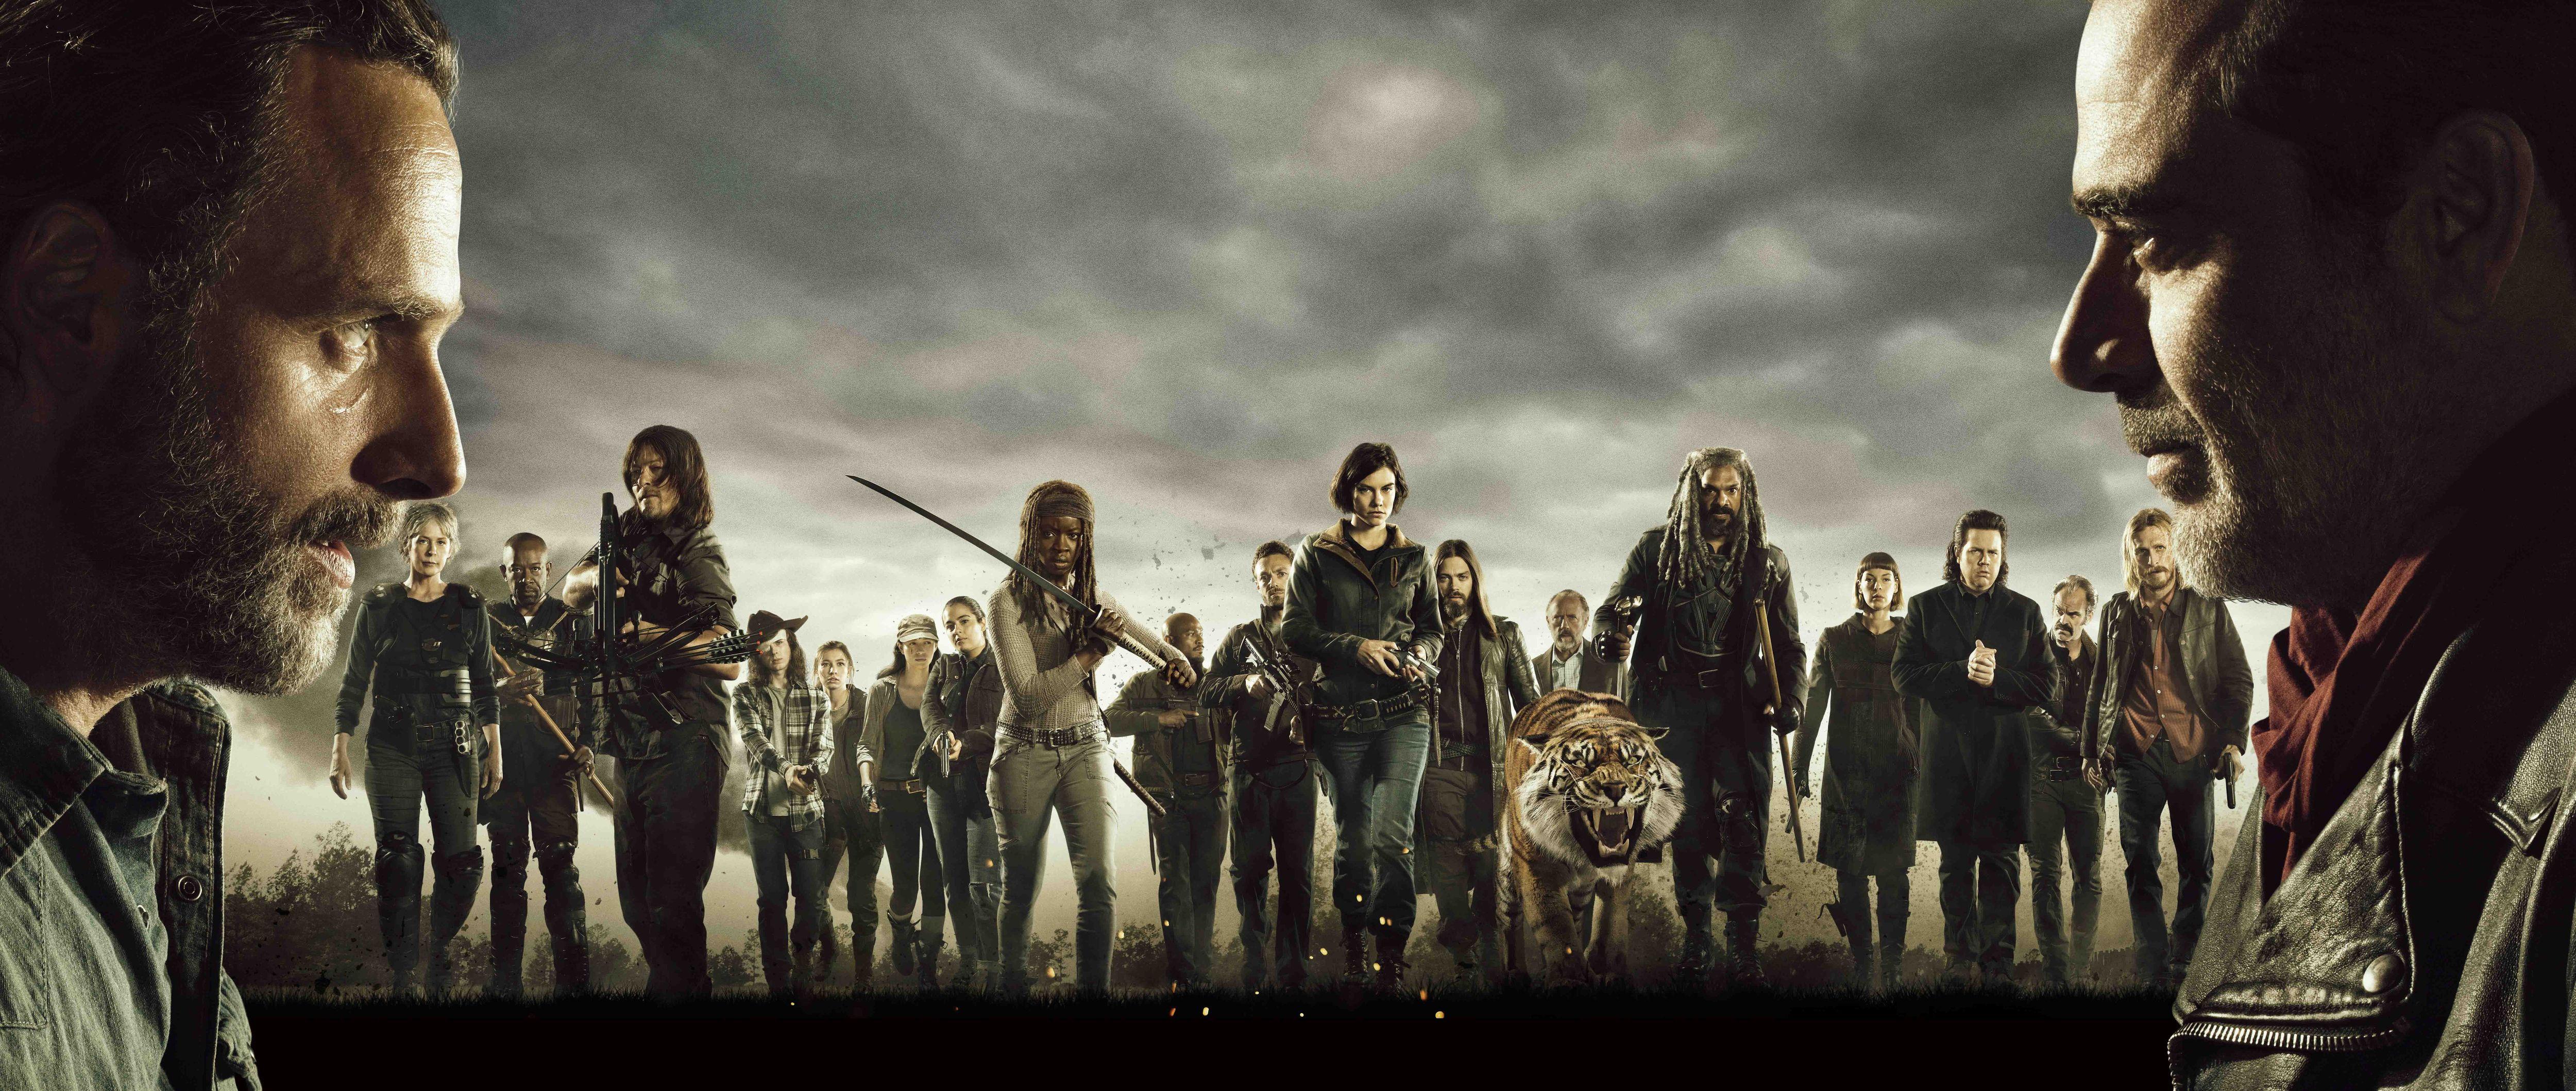 Hình nền và Hình nền Full HD 5000x2117 The Walking Dead.  5000x2117